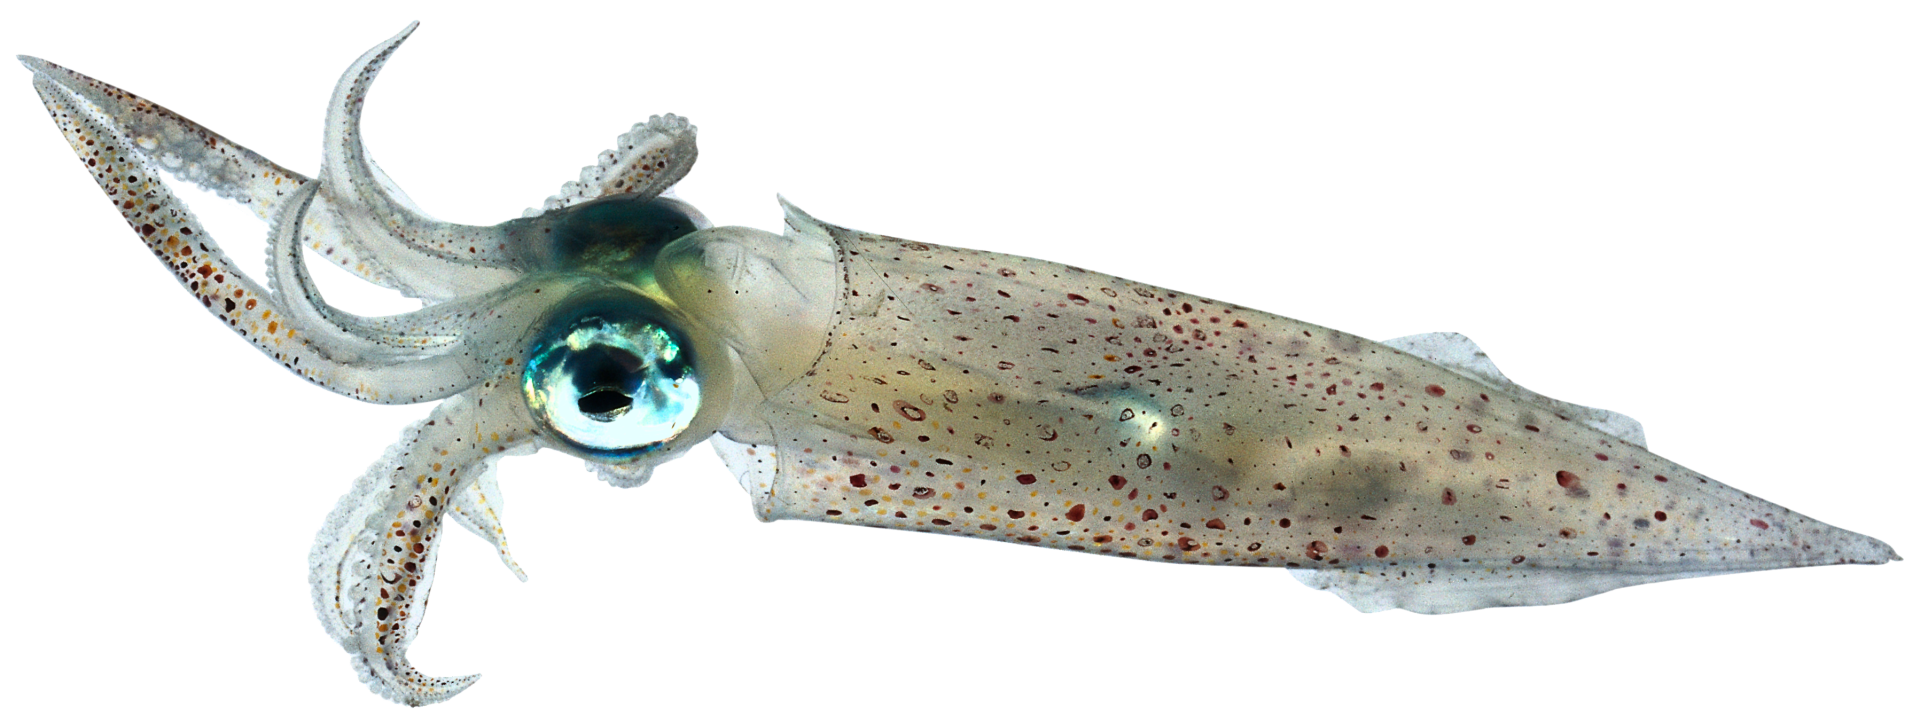 squid clipart mollusk